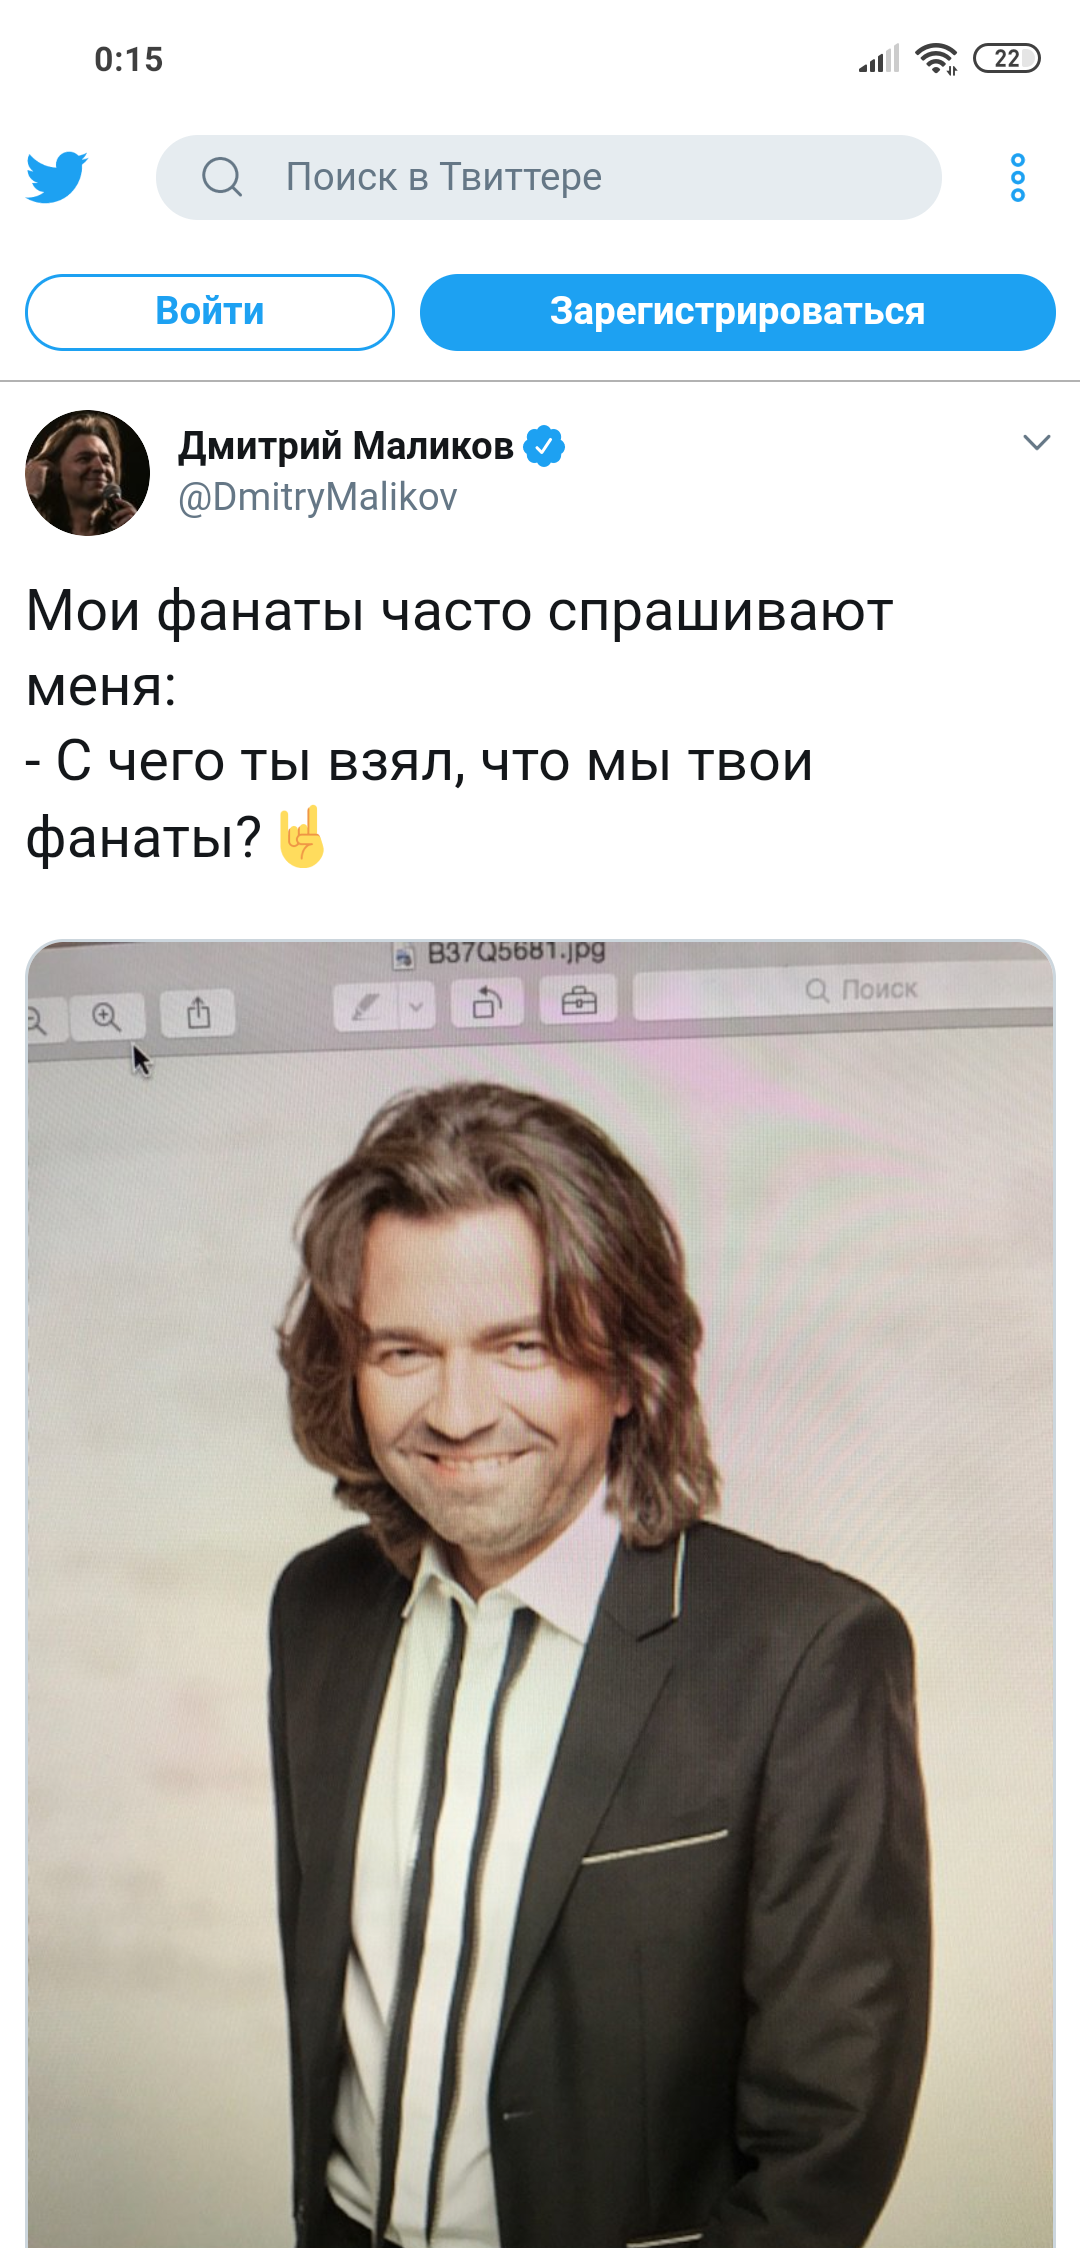 Рекламы дмитрия маликова